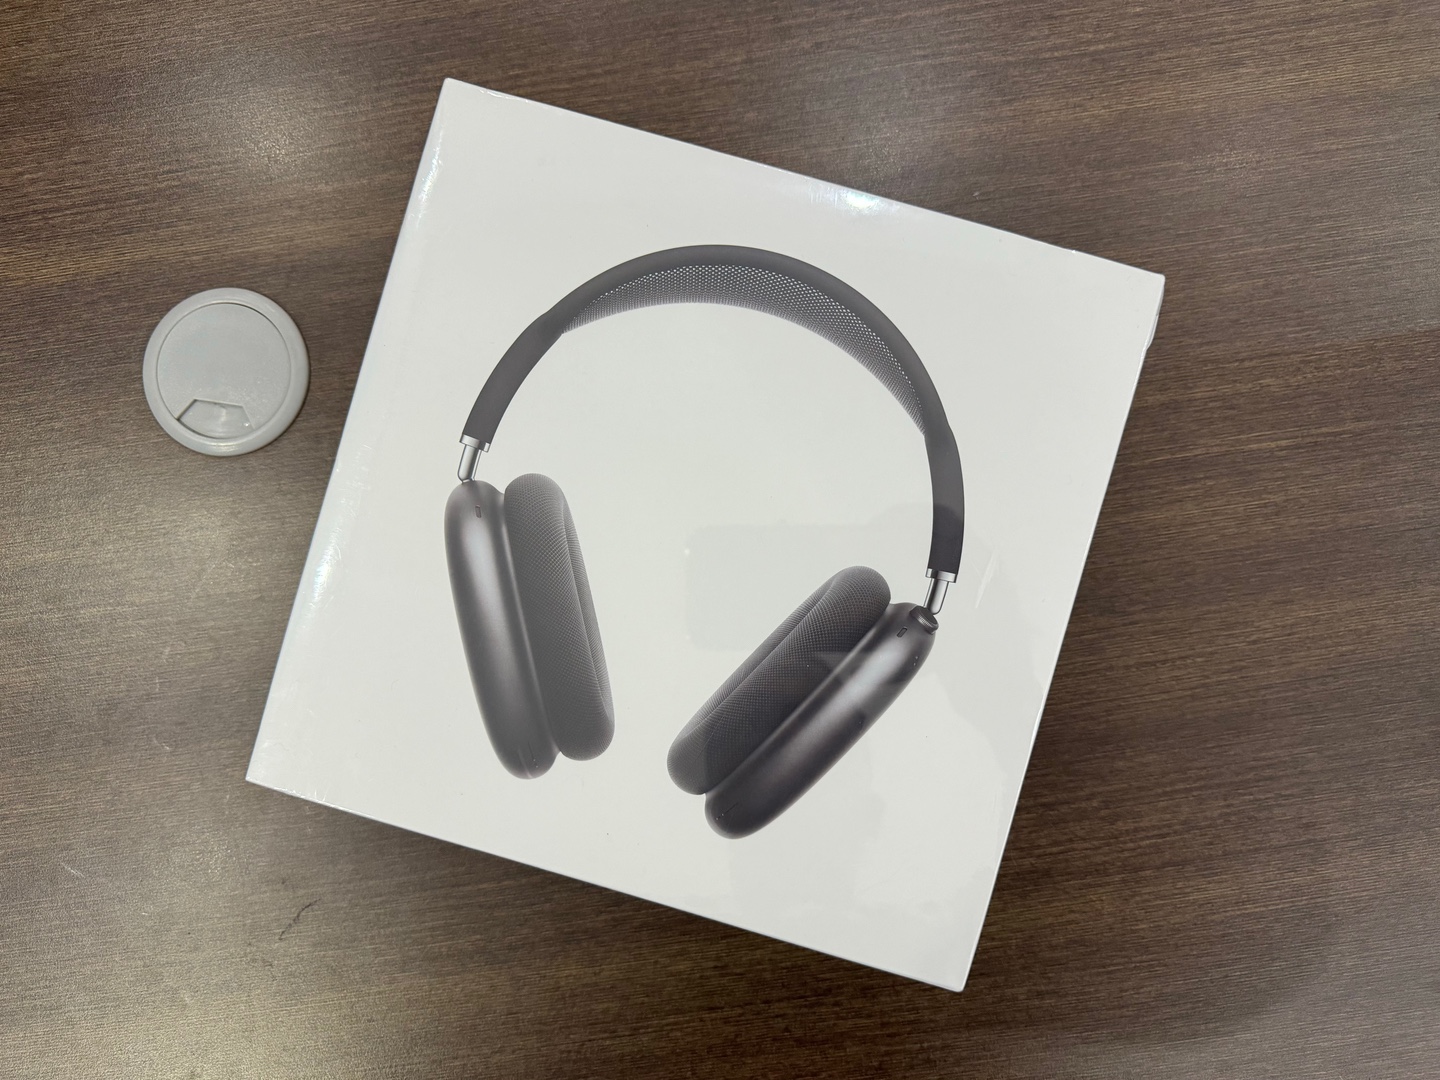 camaras y audio - AirPods Max Nuevos Sellados by Apple, Color: Space Gray, Originales, RD$ 29,500 